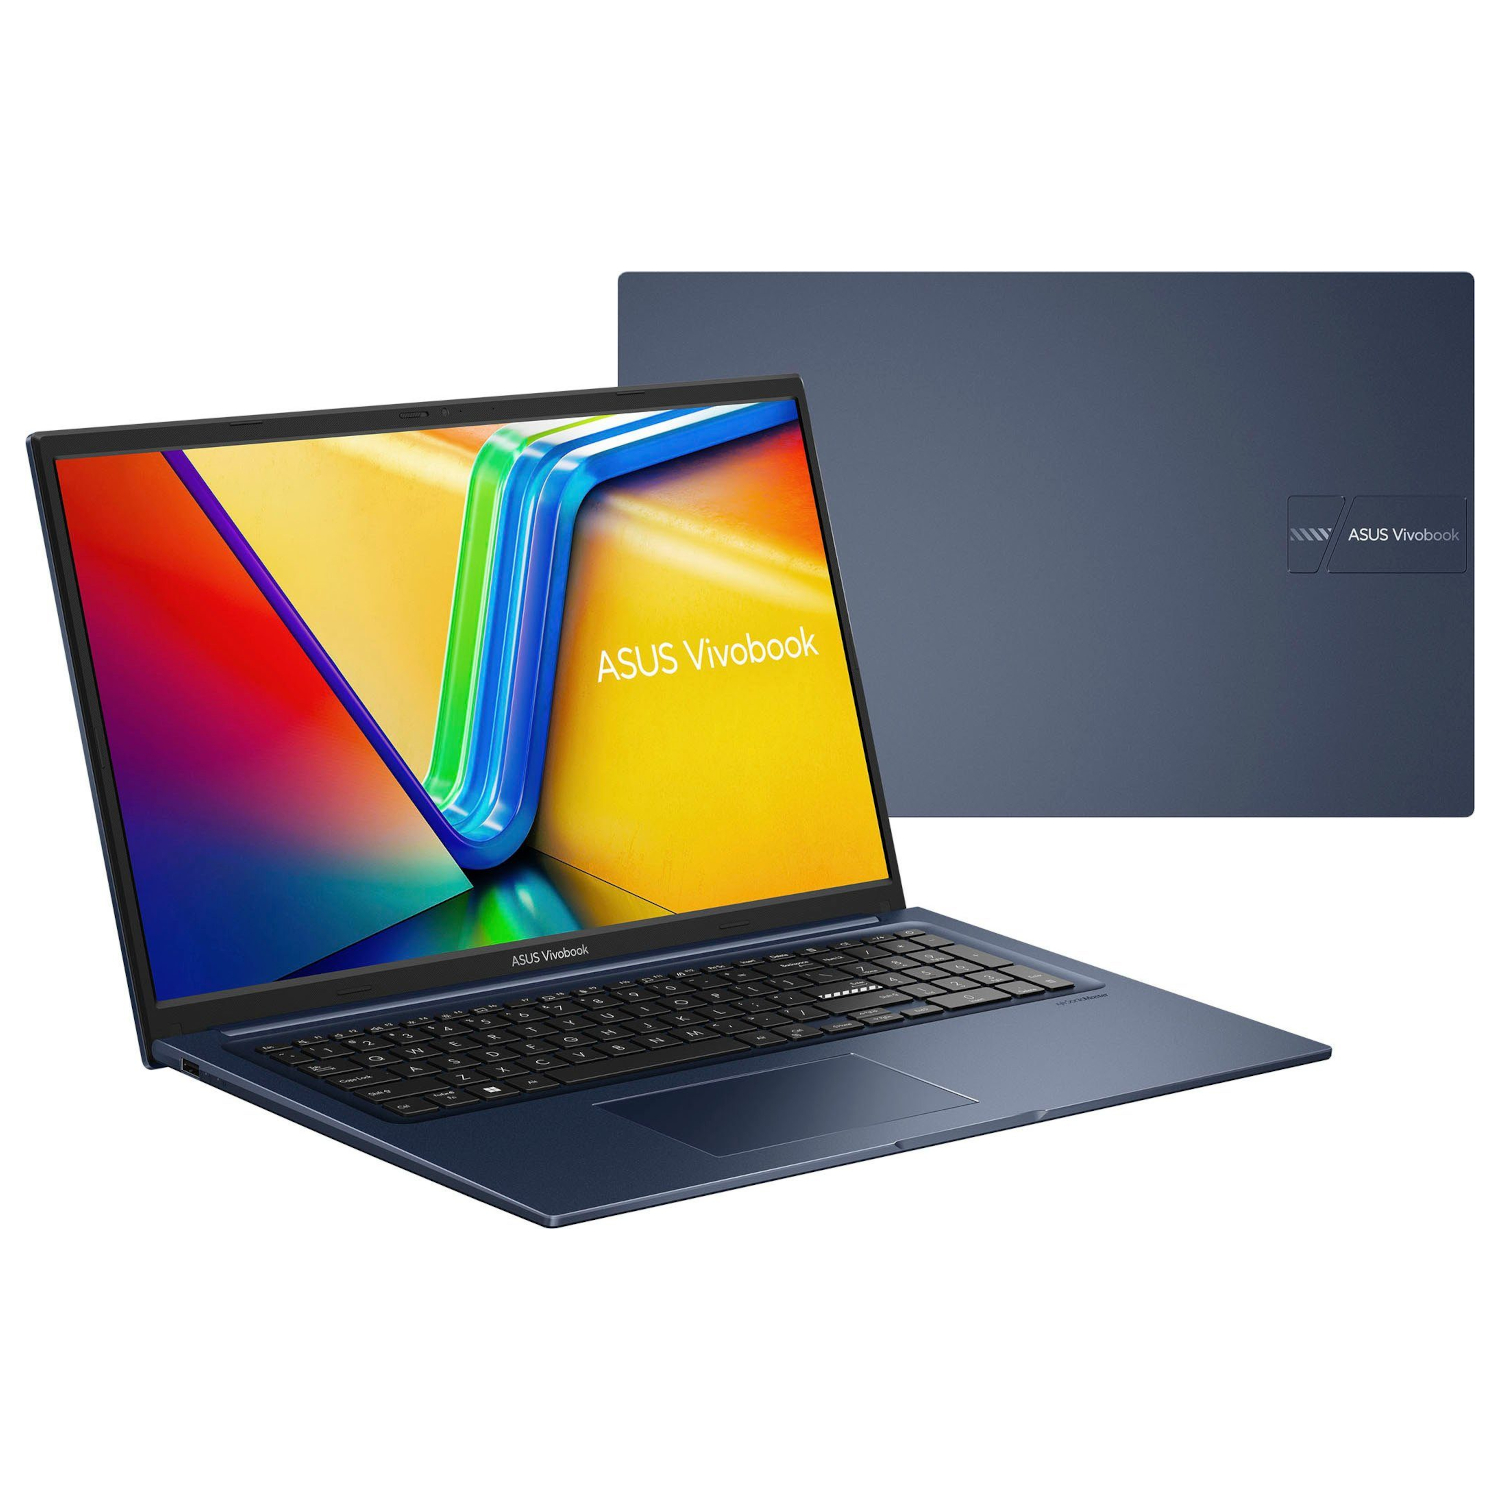 ASUS Vivobook X-Serie, GB 12 eingerichtet, Office RAM, 2021 fertig Blue 4000 Pro, SSD, Zoll Intel®, Display, Notebook mit 17,3 Quiet GB